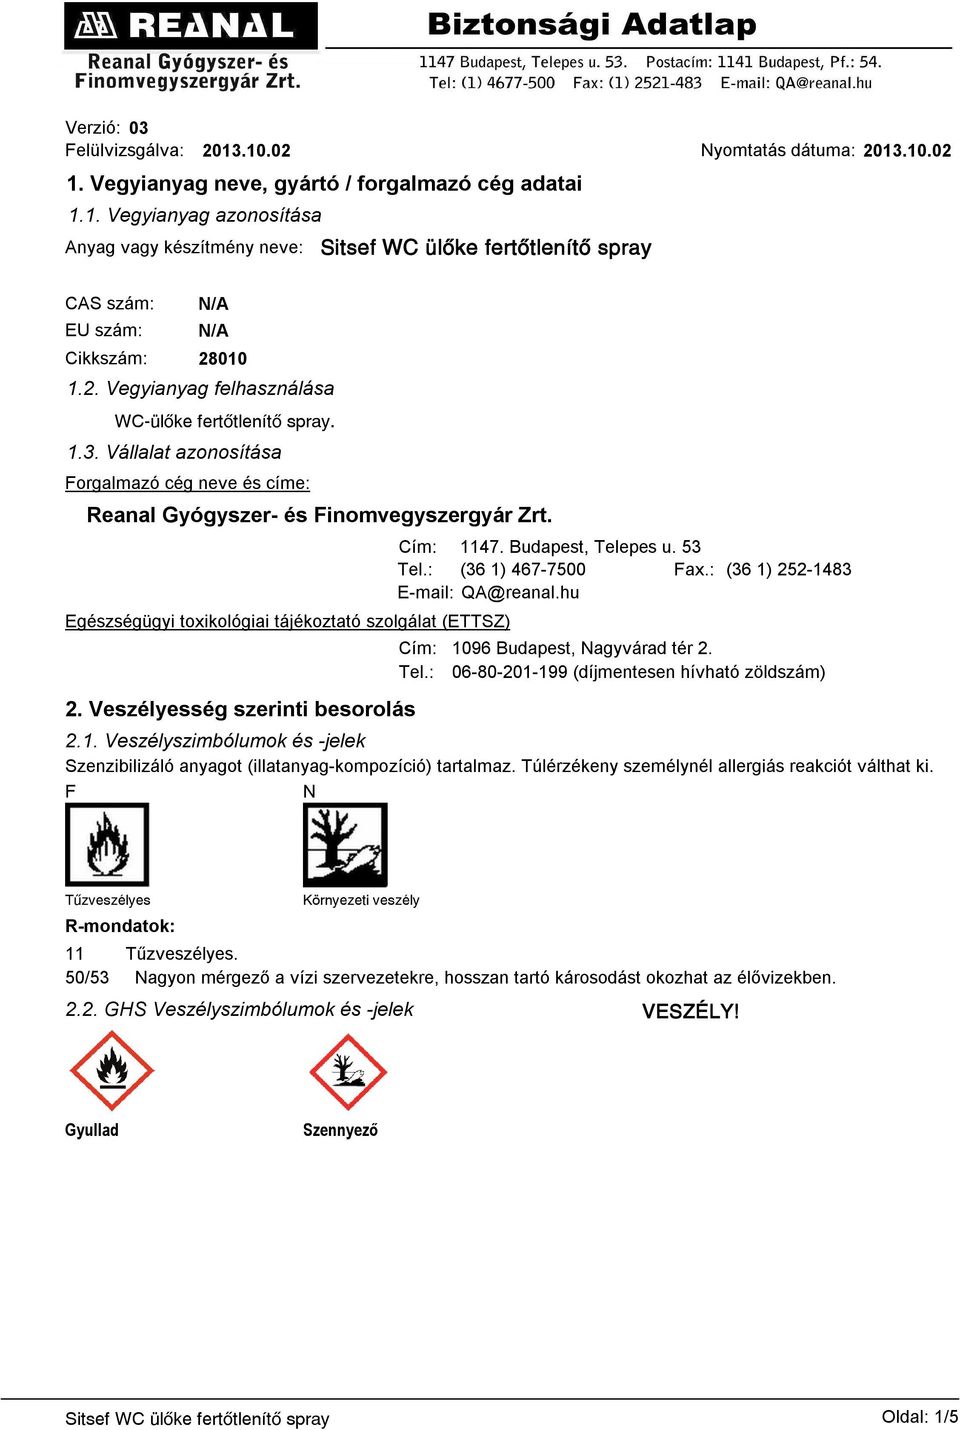 Egészségügyi toxikológiai tájékoztató szolgálat (ETTSZ) 2. Veszélyesség szerinti besorolás Cím: 1147. Budapest, Telepes u. 53 Tel.: (36 1) 467-7500 Fax.: (36 1) 252-1483 E-mail: QA@reanal.hu Cím: Tel.